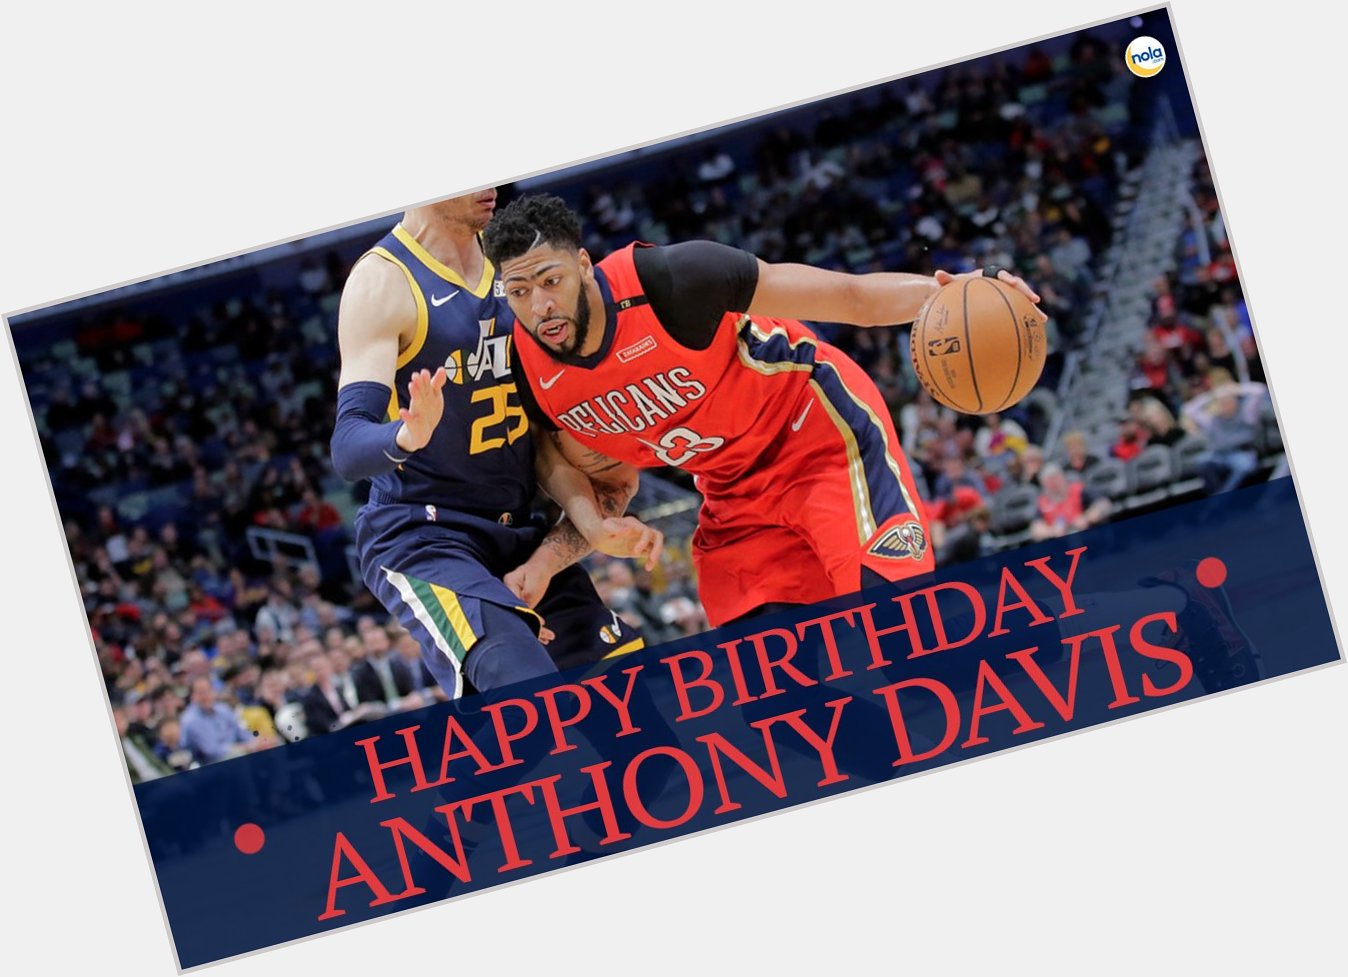 Happy birthday, Anthony Davis!  